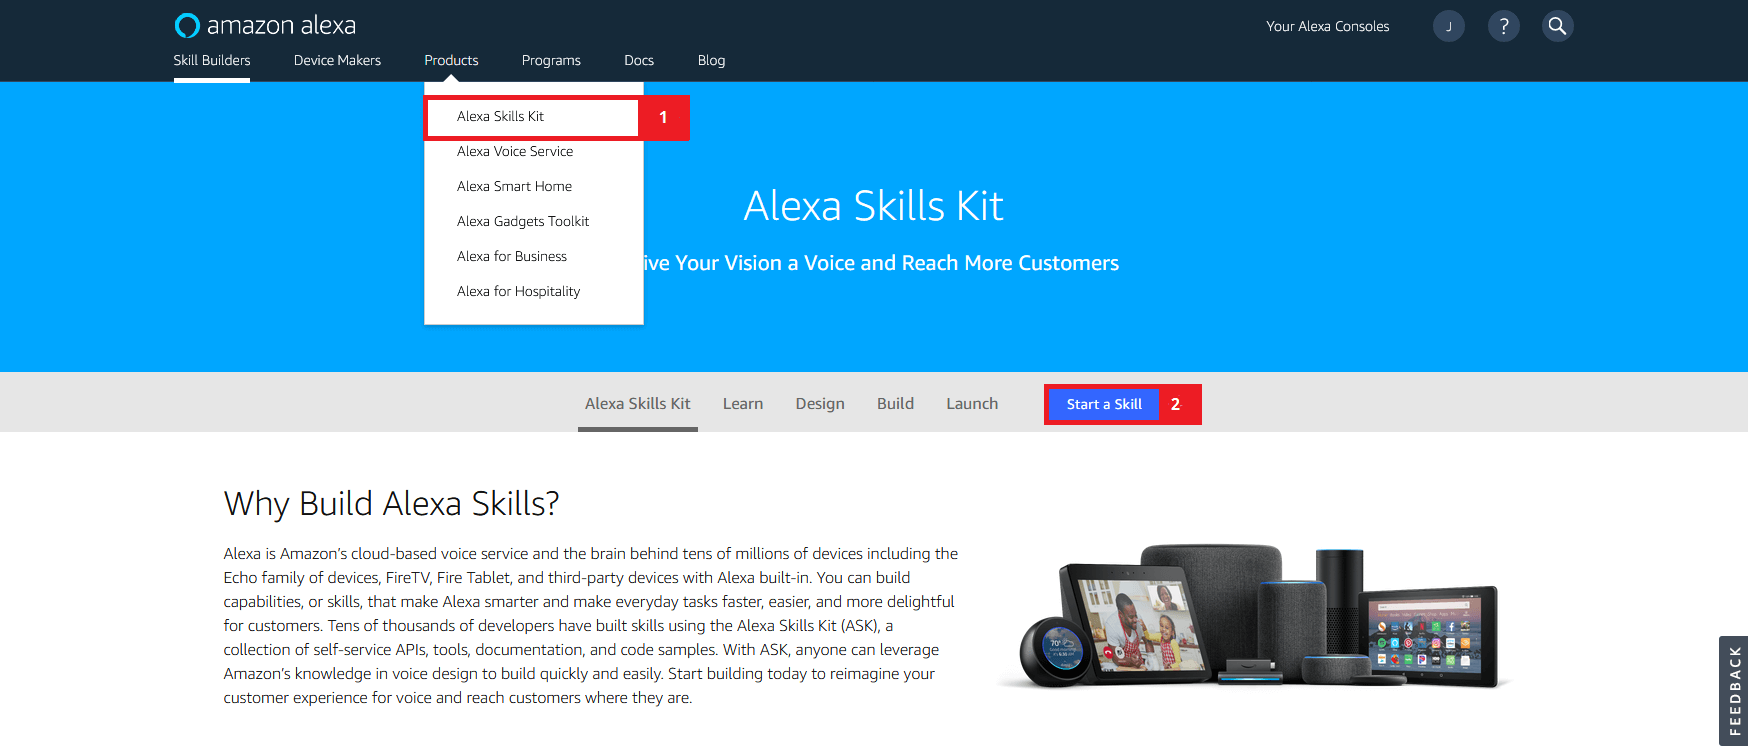 Amazon Developer account: The Alexa Skills Kit